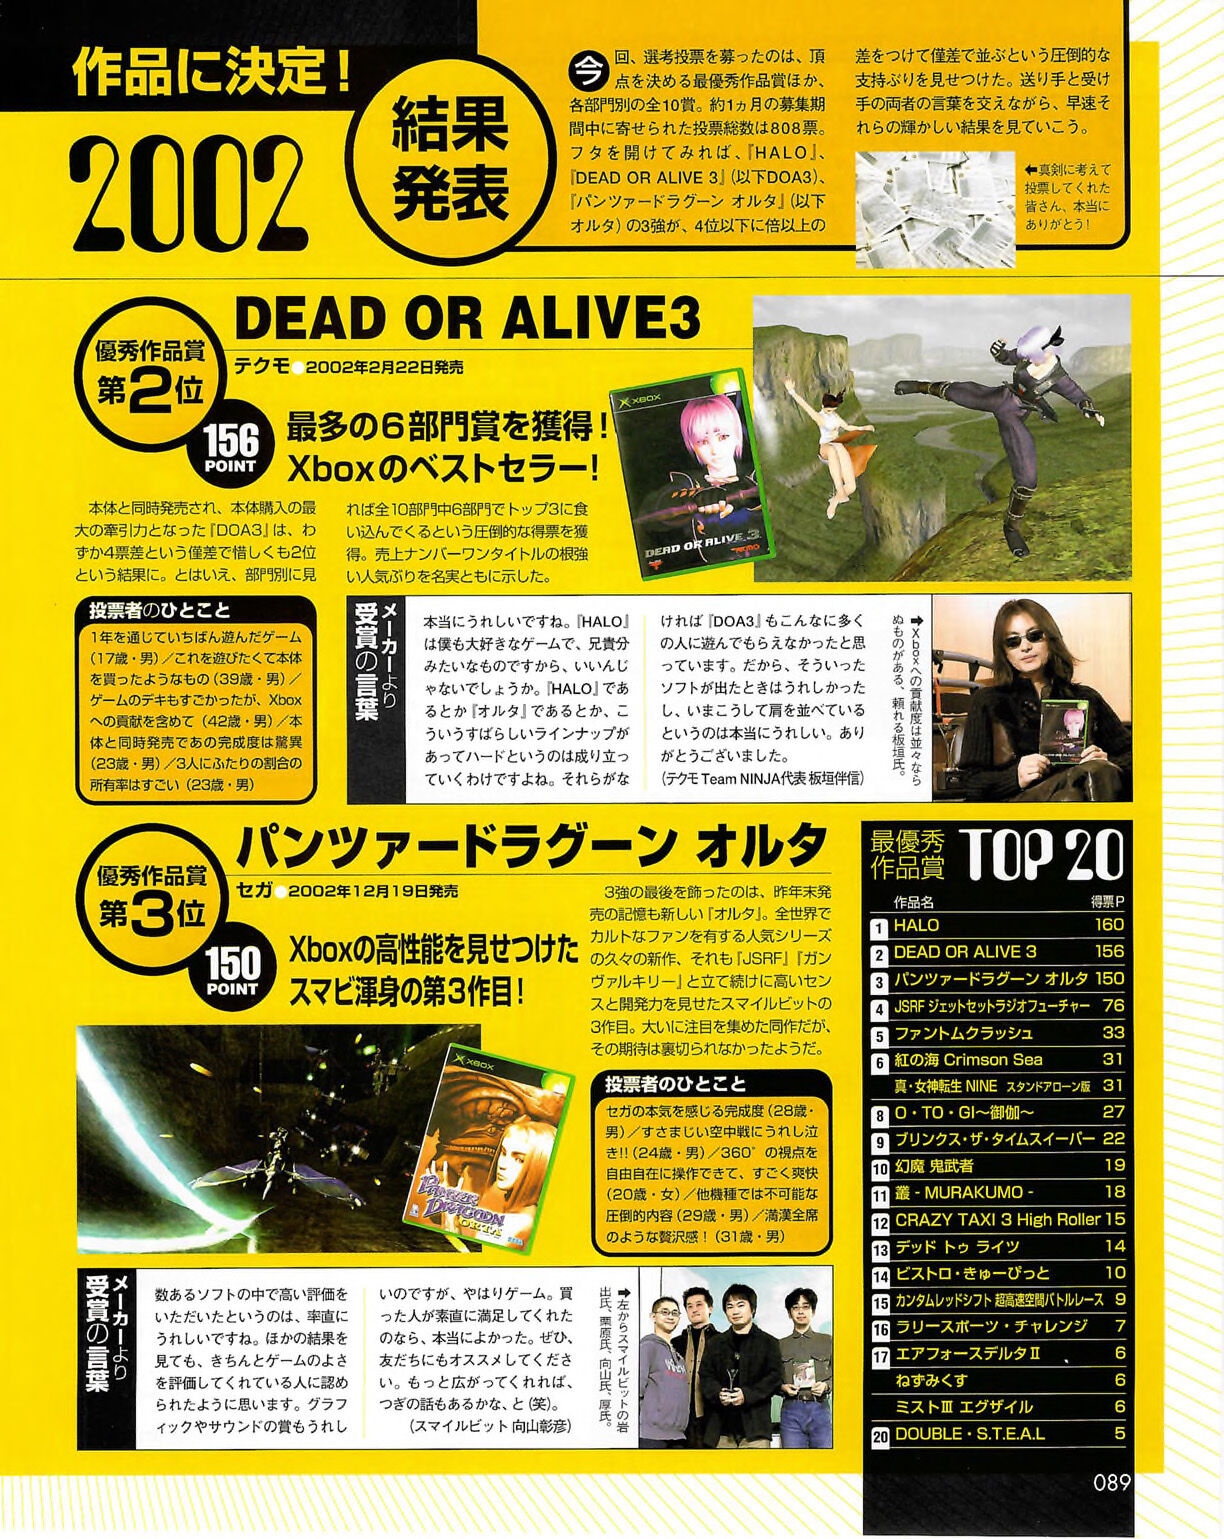 Famitsu_Xbox_2003-04_jp2 88